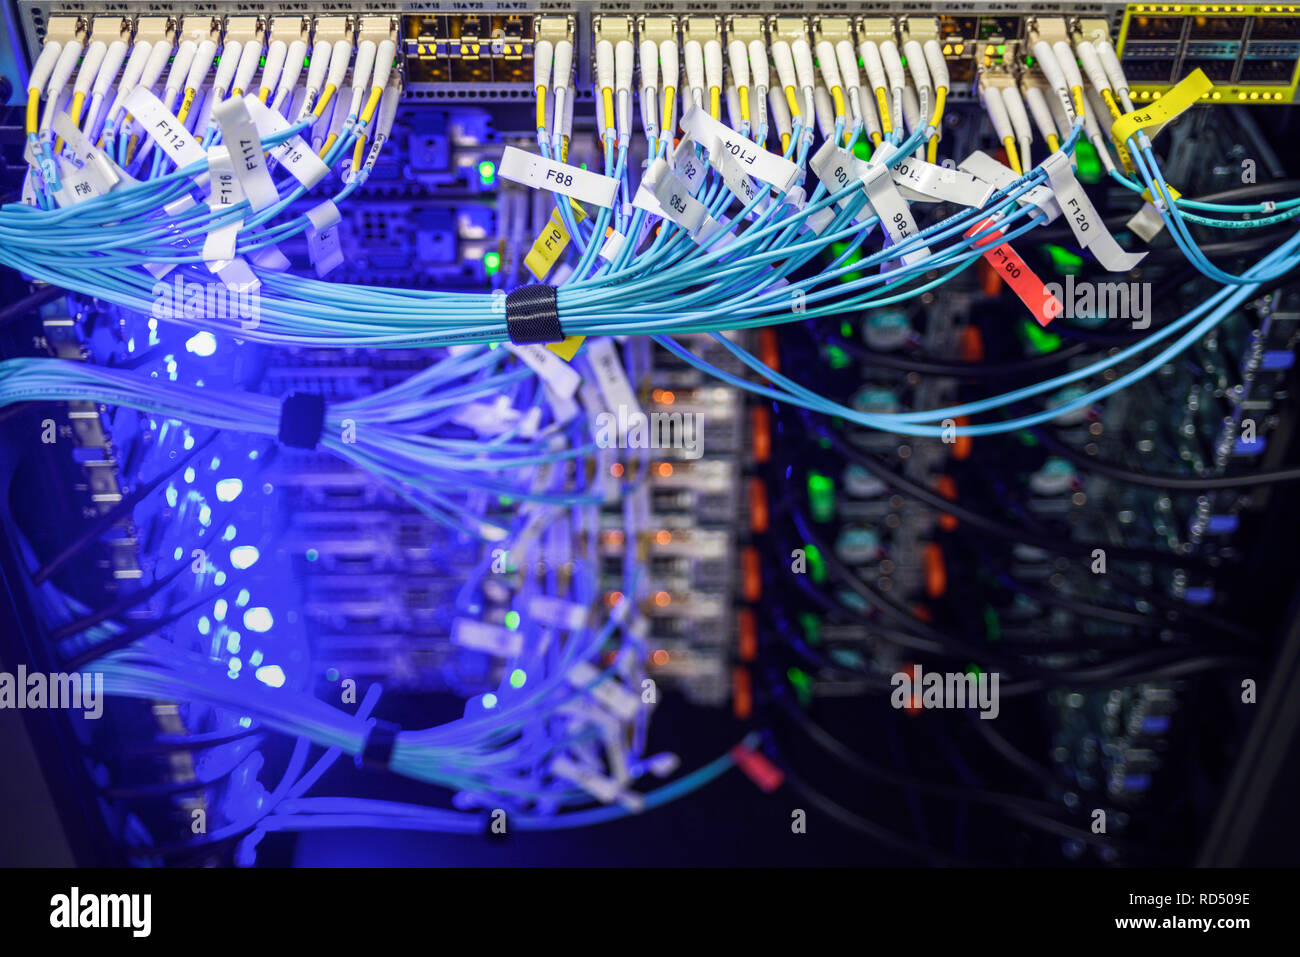 Netzwerk Hardware perfekt organisiert. Etiketten mit Portnummern auf Drähte Stockfoto